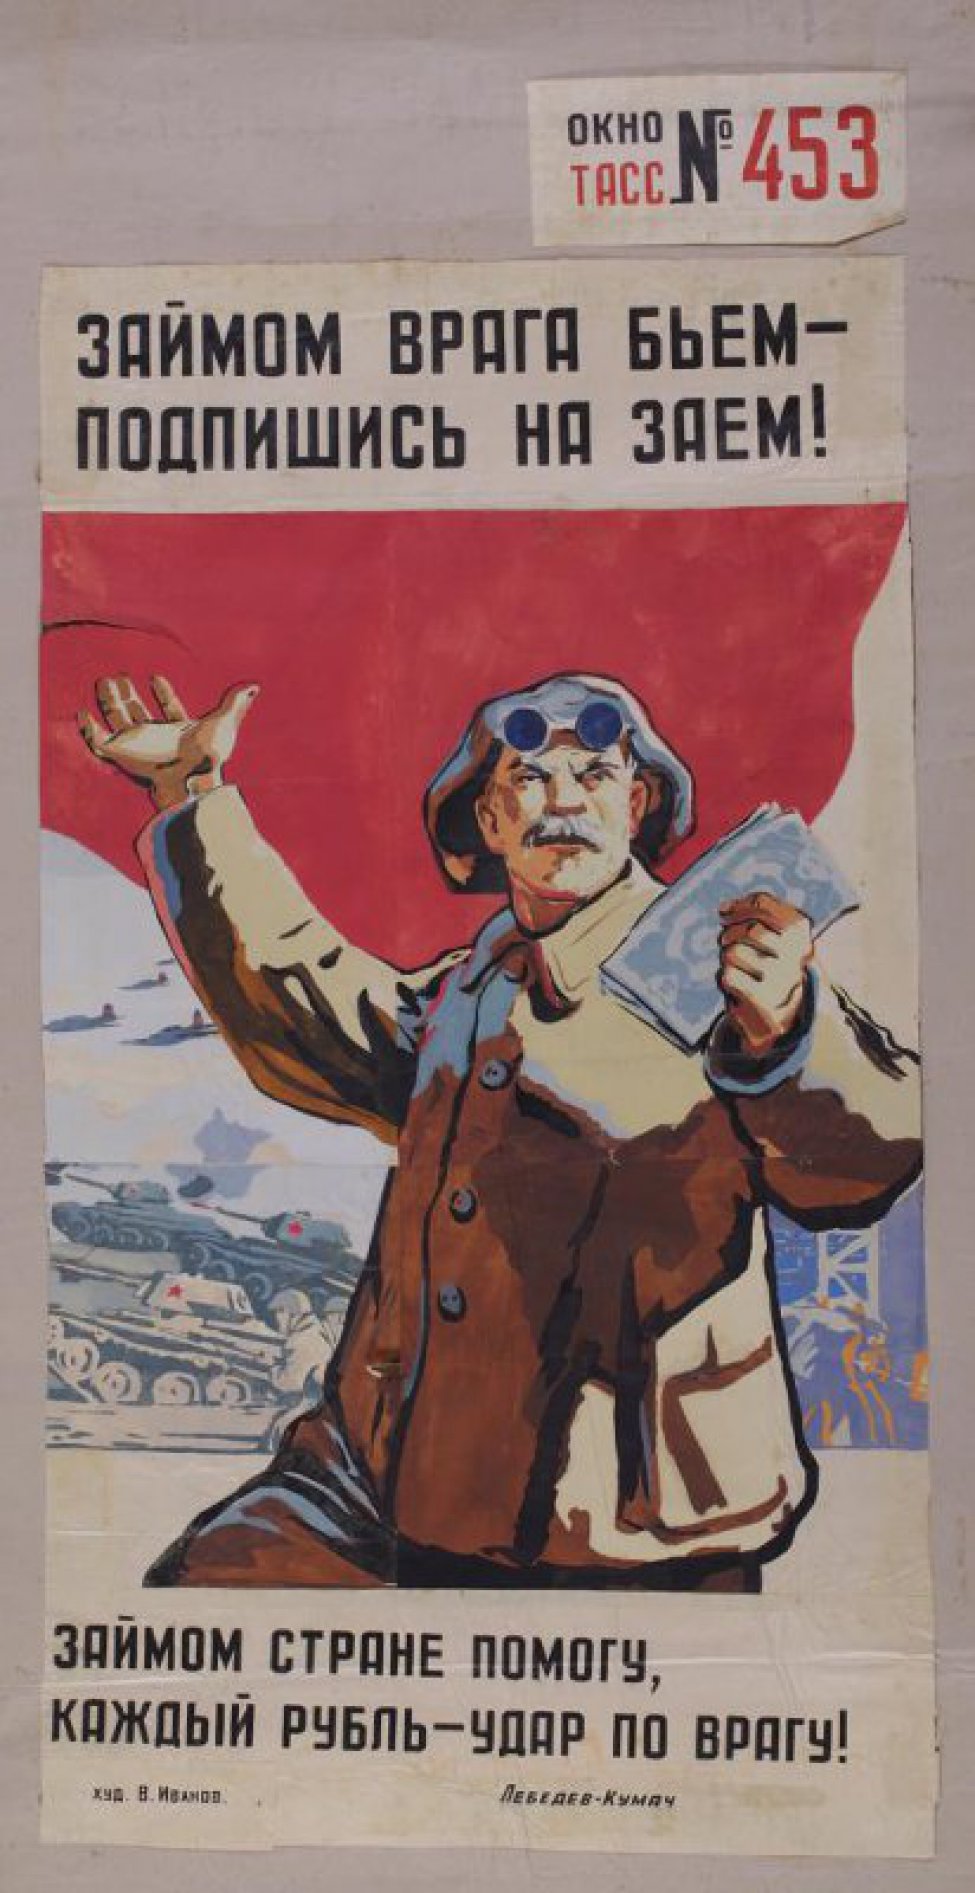 На фоне знамени рабочий с деньгами, дальше- танки, самолеты. Текст Лебедева-Кумача:" Займом стране помогу, каждый рубль -удар по врагу1".